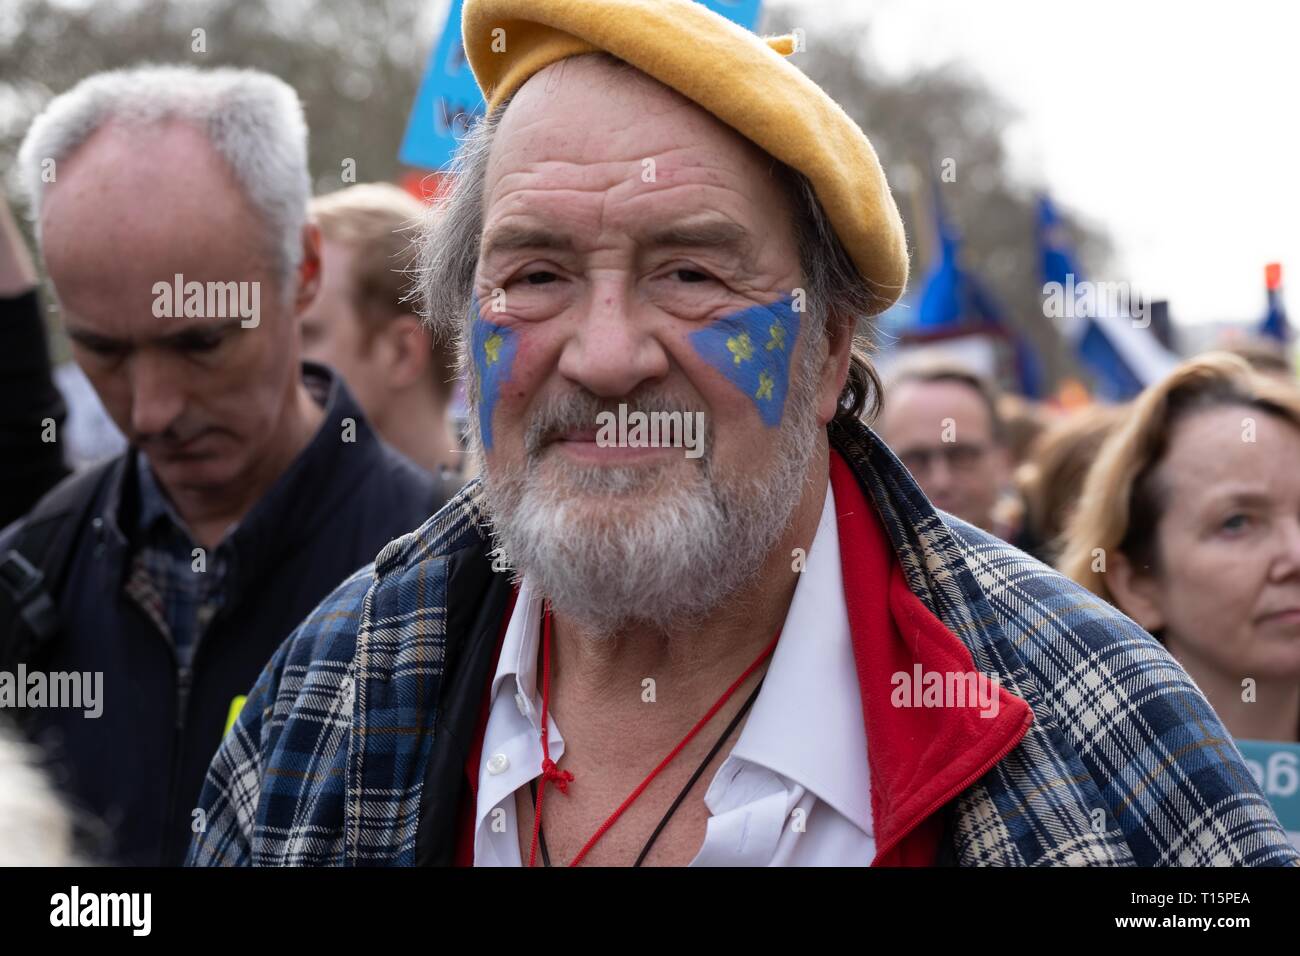 Londres, Reino Unido. 23 Mar, 2019. Hombre de edad avanzada con la cara pintada de azul con estrellas amarillas en poner a la gente marcha de protesta. Londres. El 23 de marzo de 2019 Crédito: Chris Moos/Alamy Live News Foto de stock